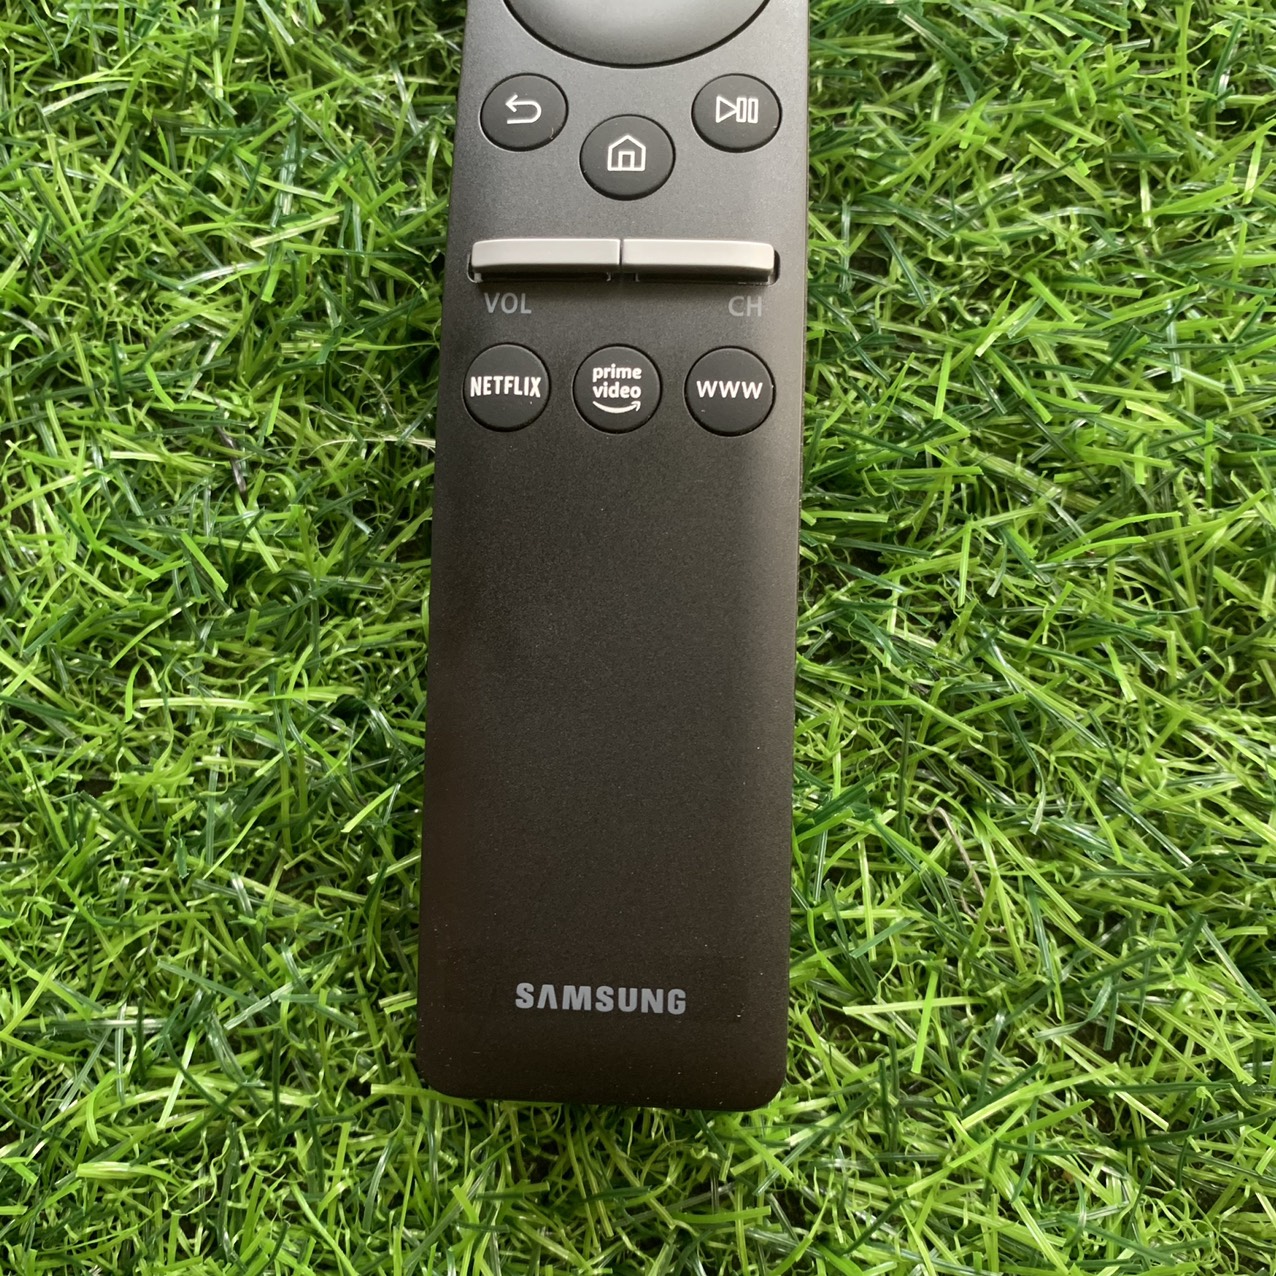 Điều khiển tivi Samsung smart giọng nói internet tương thích các dòng tv ss đời 2017 đến 2020, remote, mót...